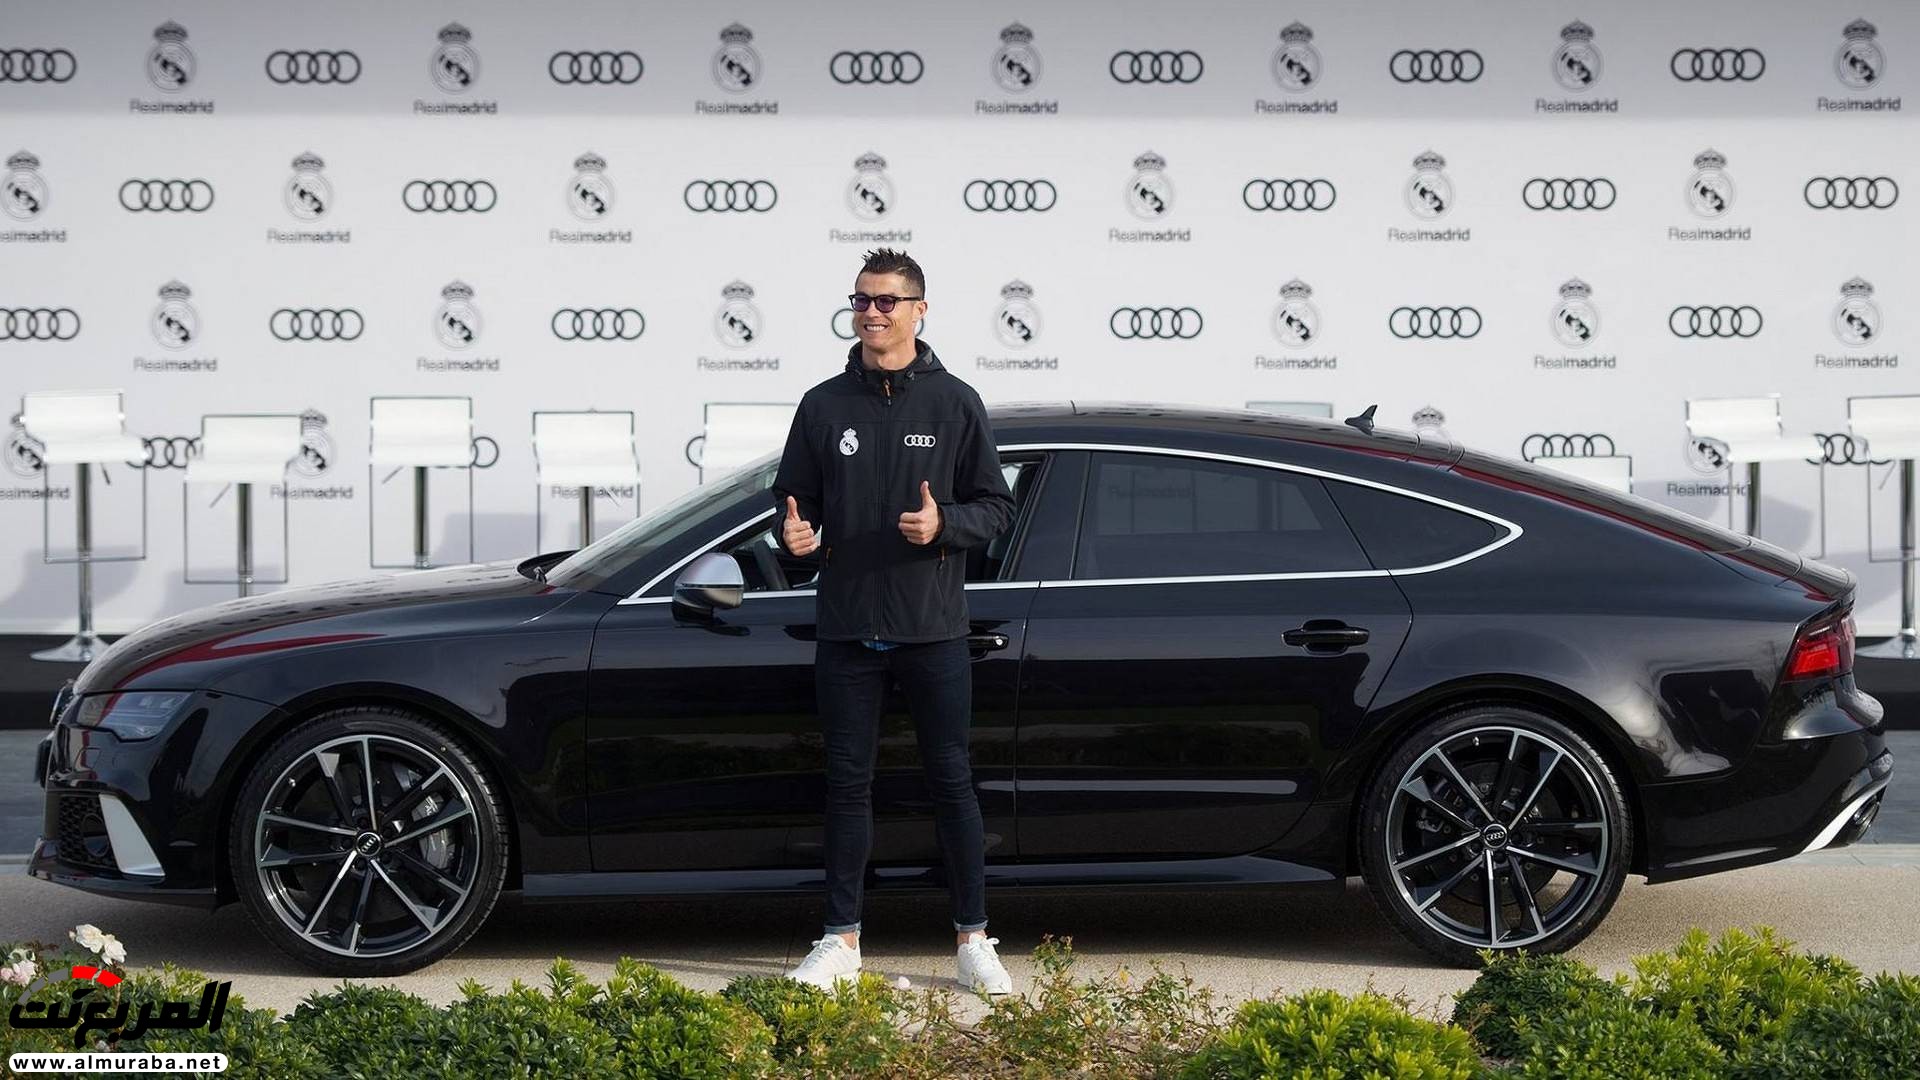 لاعبو ريال مدريد يستلمون سيارات أودي الجديدة "فيديو وصور" 2